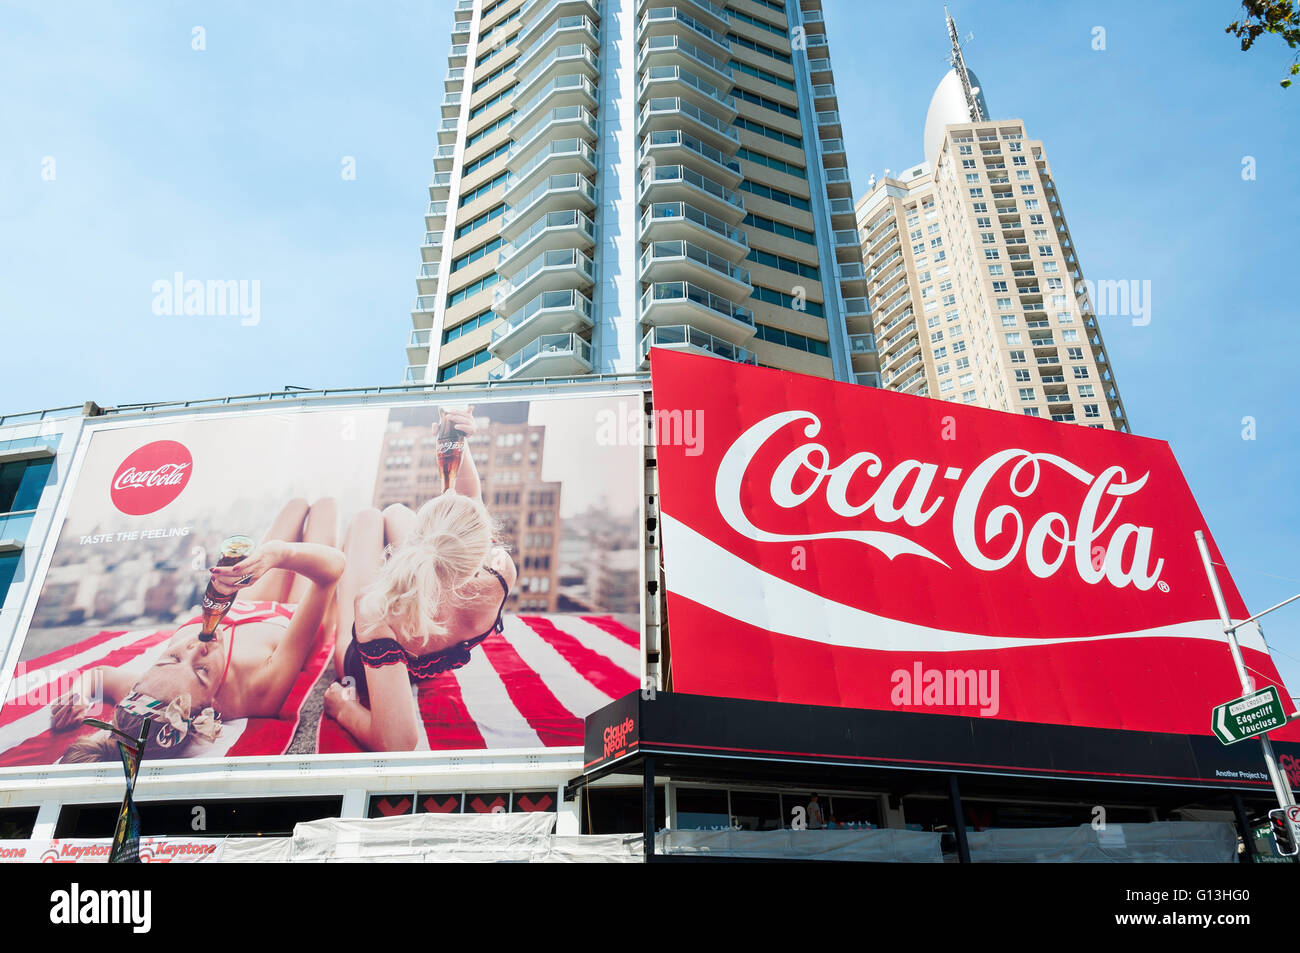 Coca Cola cartelloni e alto edificio di appartamenti, Darlinghurst Road, Kings Cross, Sydney, Nuovo Galles del Sud, Australia Foto Stock